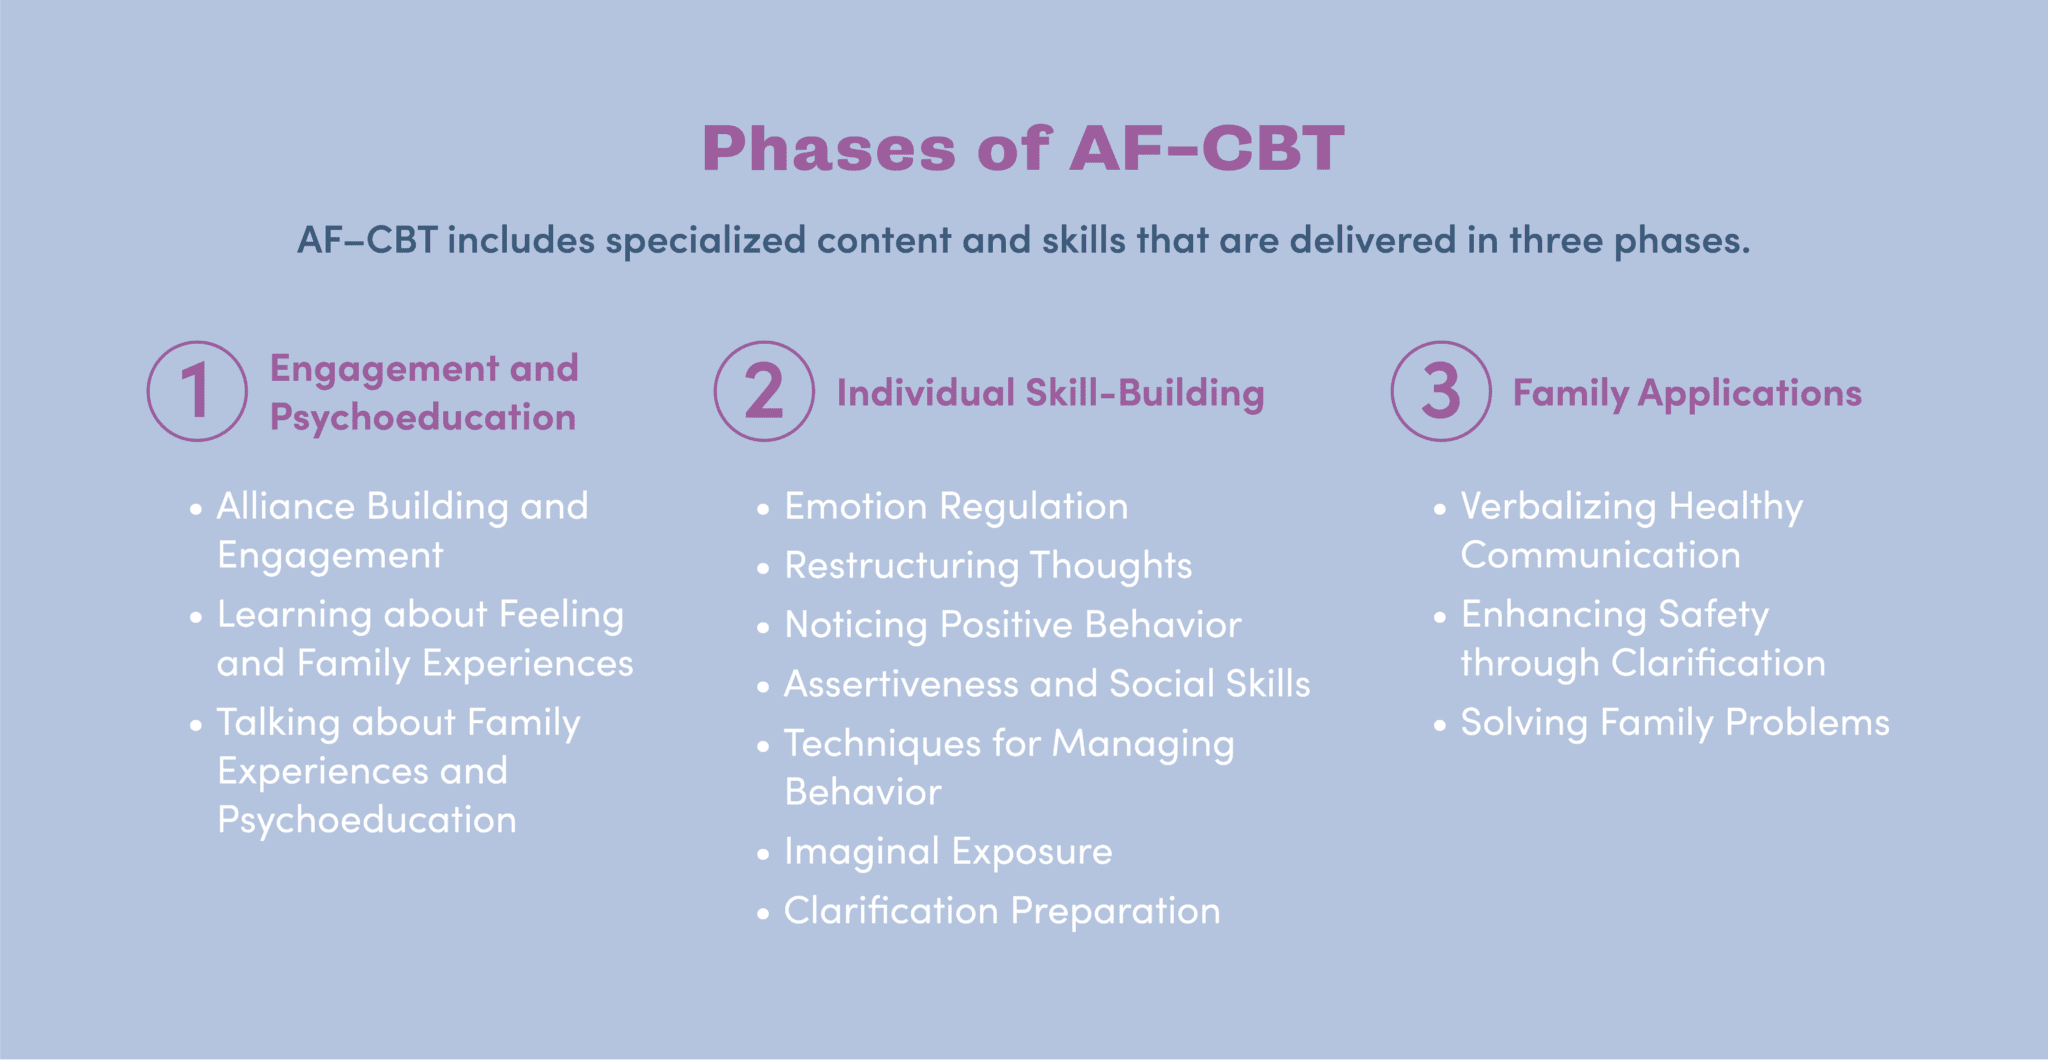 Phases of AF-CBT